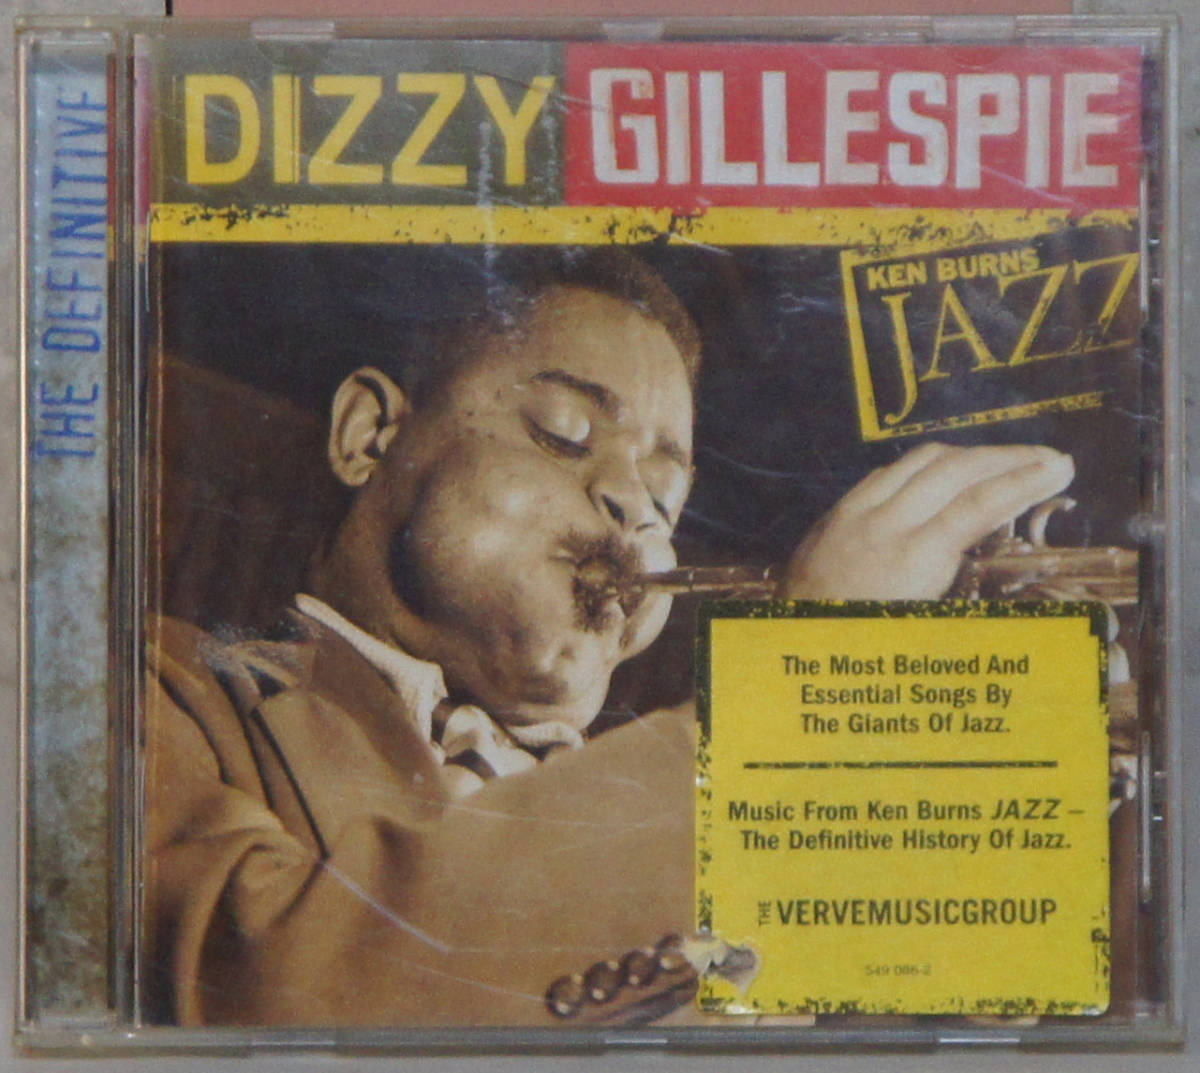 CD ● DIZZY GILLESPIE / KEN BURNS JAZZ ● 549 086-2 ディジー・ガレスピー ジャズ 輸入盤 C169_画像1